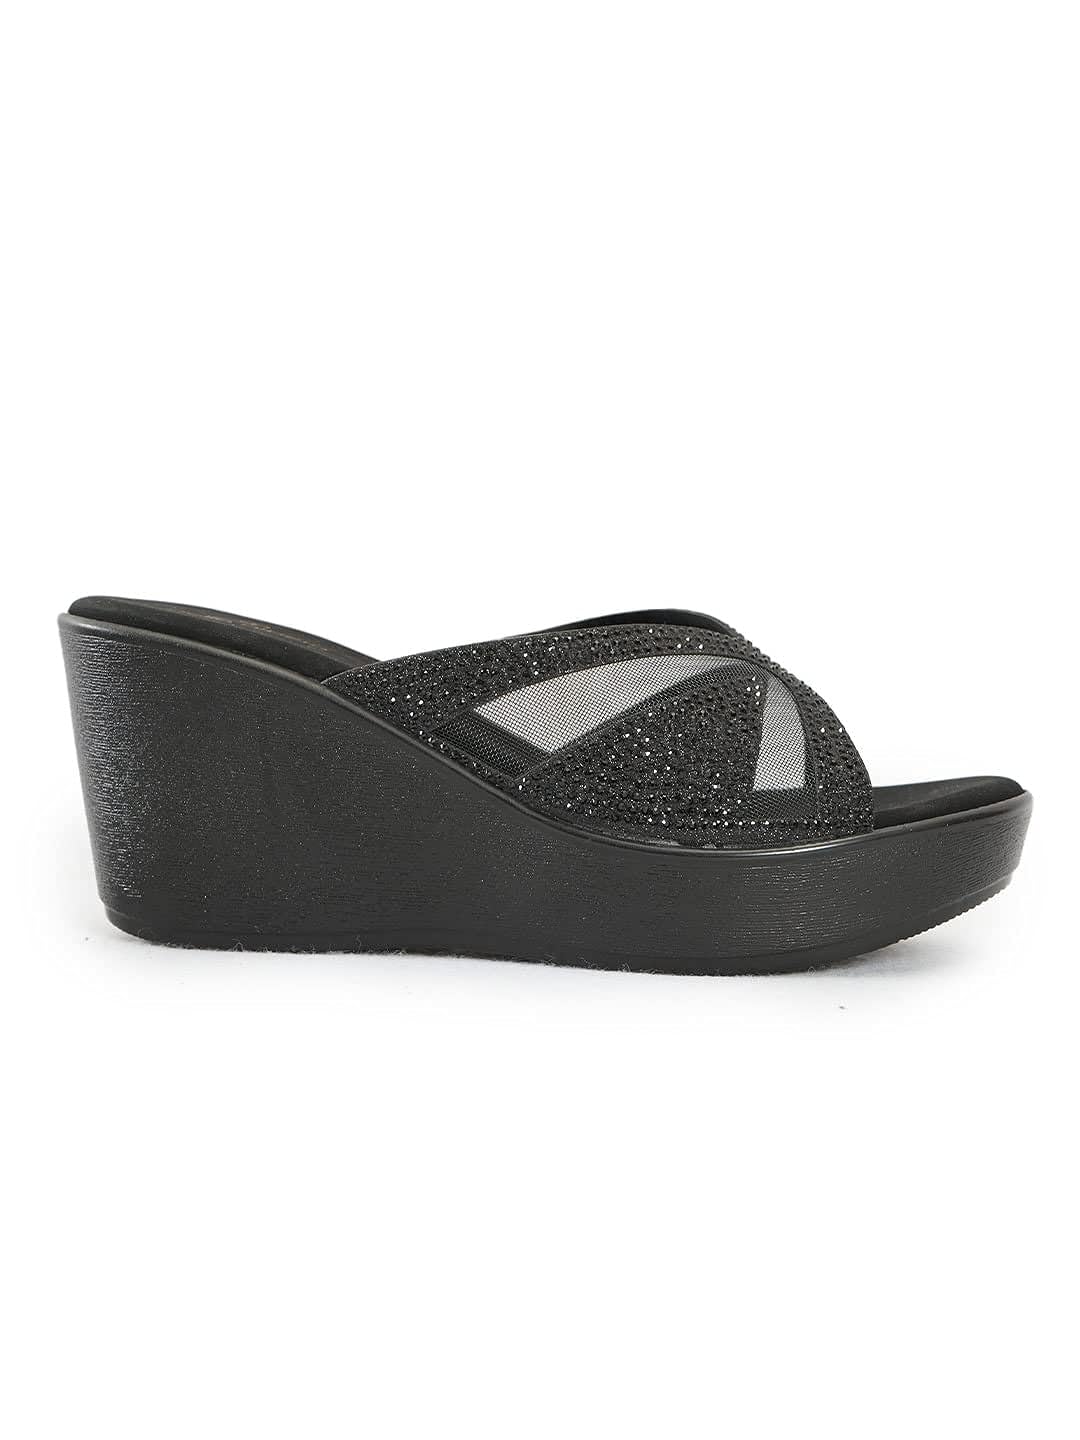 pelle albero Women Black Embellished Slip-On Wedge Heels Sandals BLACK